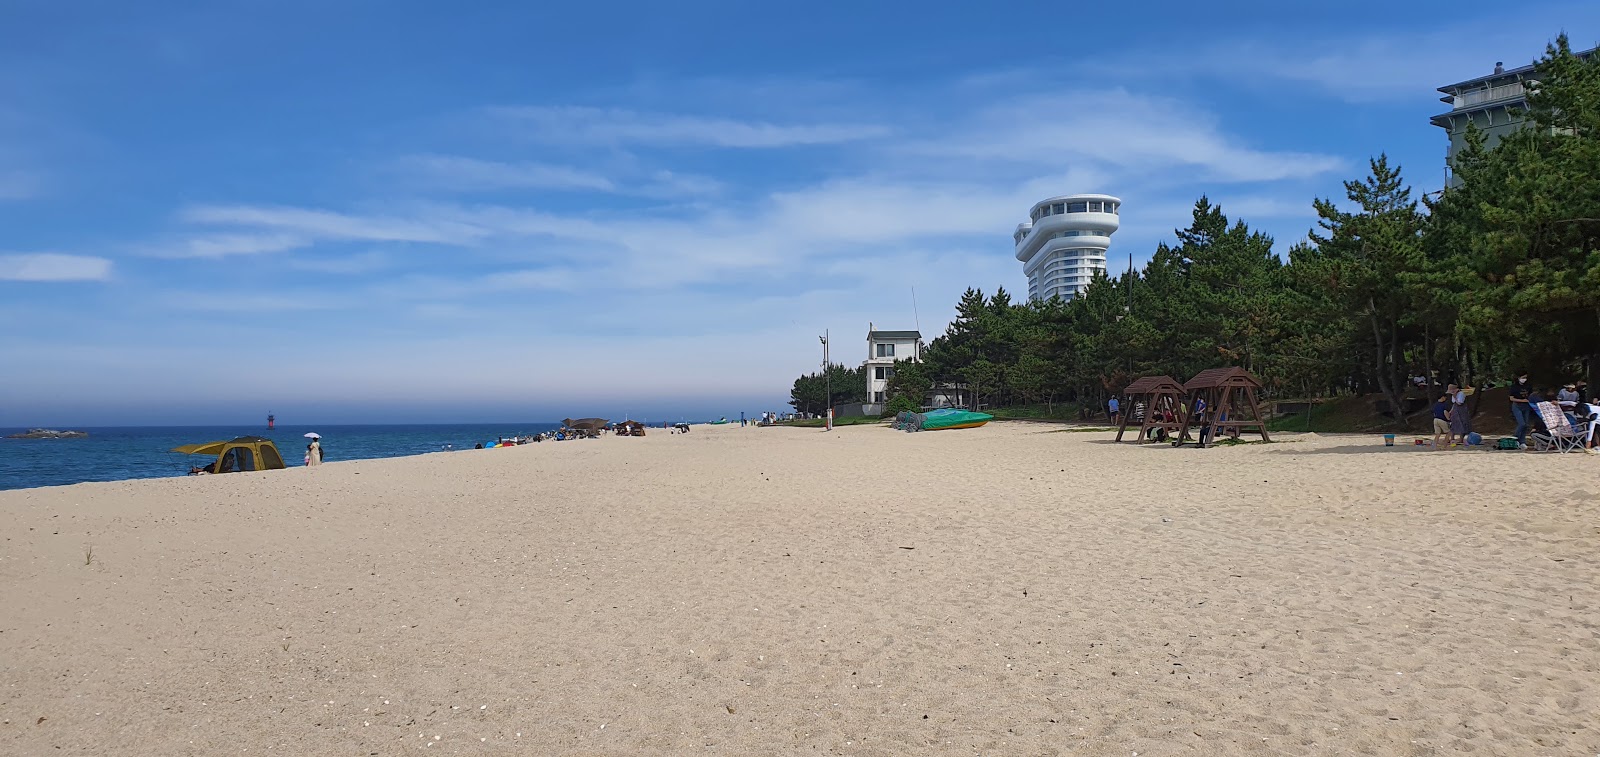 Fotografie cu Gyeongpo Beach zonele de facilități